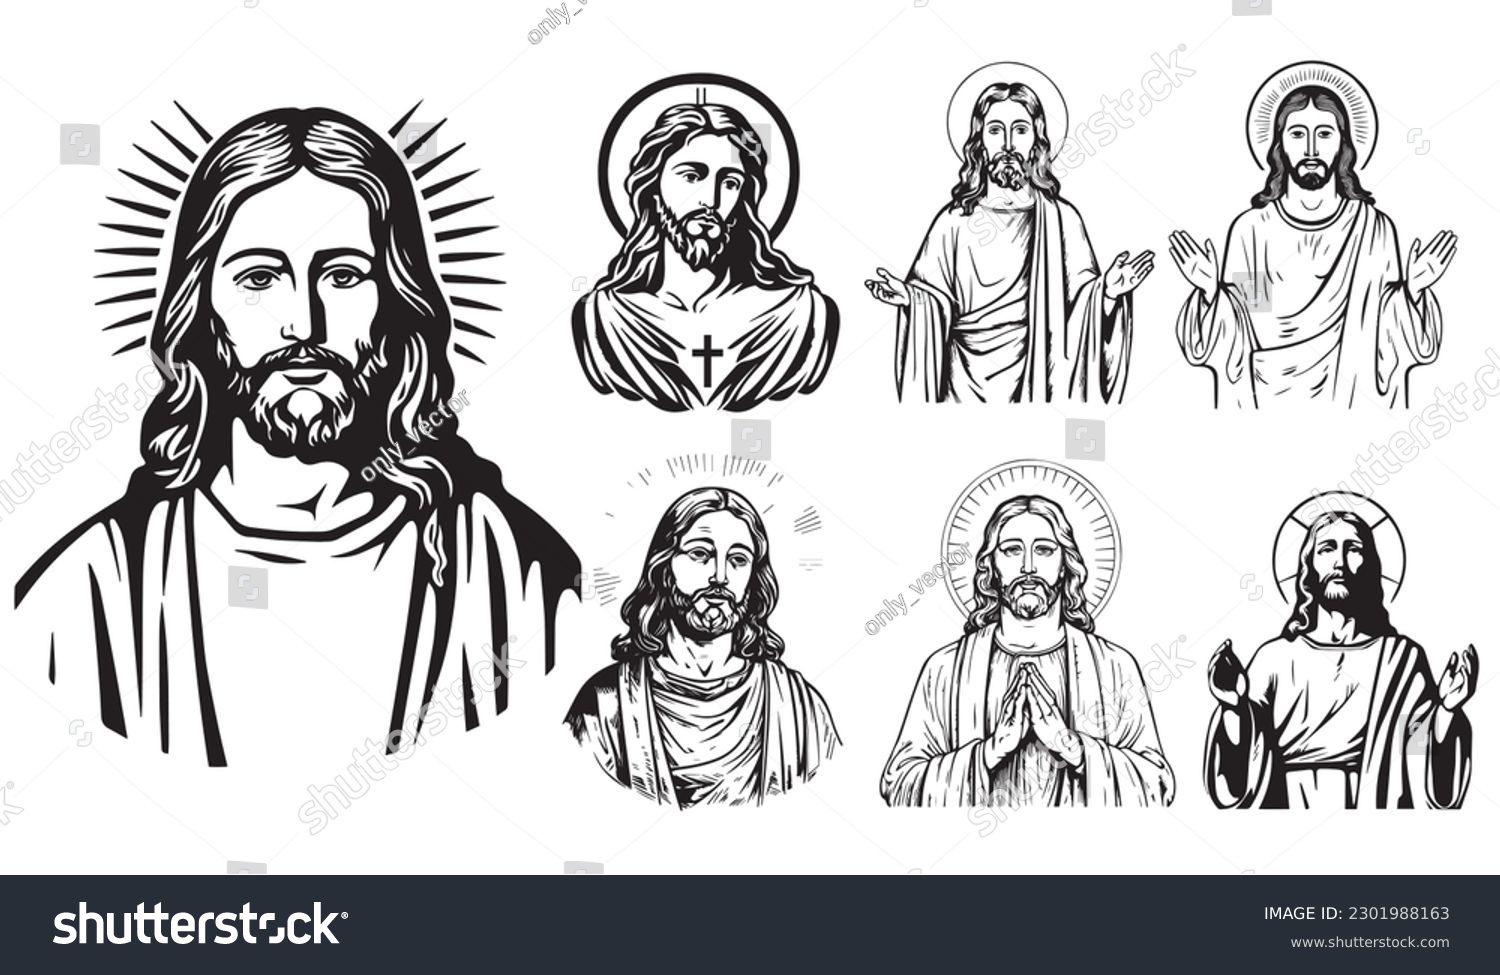 SVG of Jesus Christ Vector illustration. Black silhouette svg of Jesus, laser cutting cnc. svg